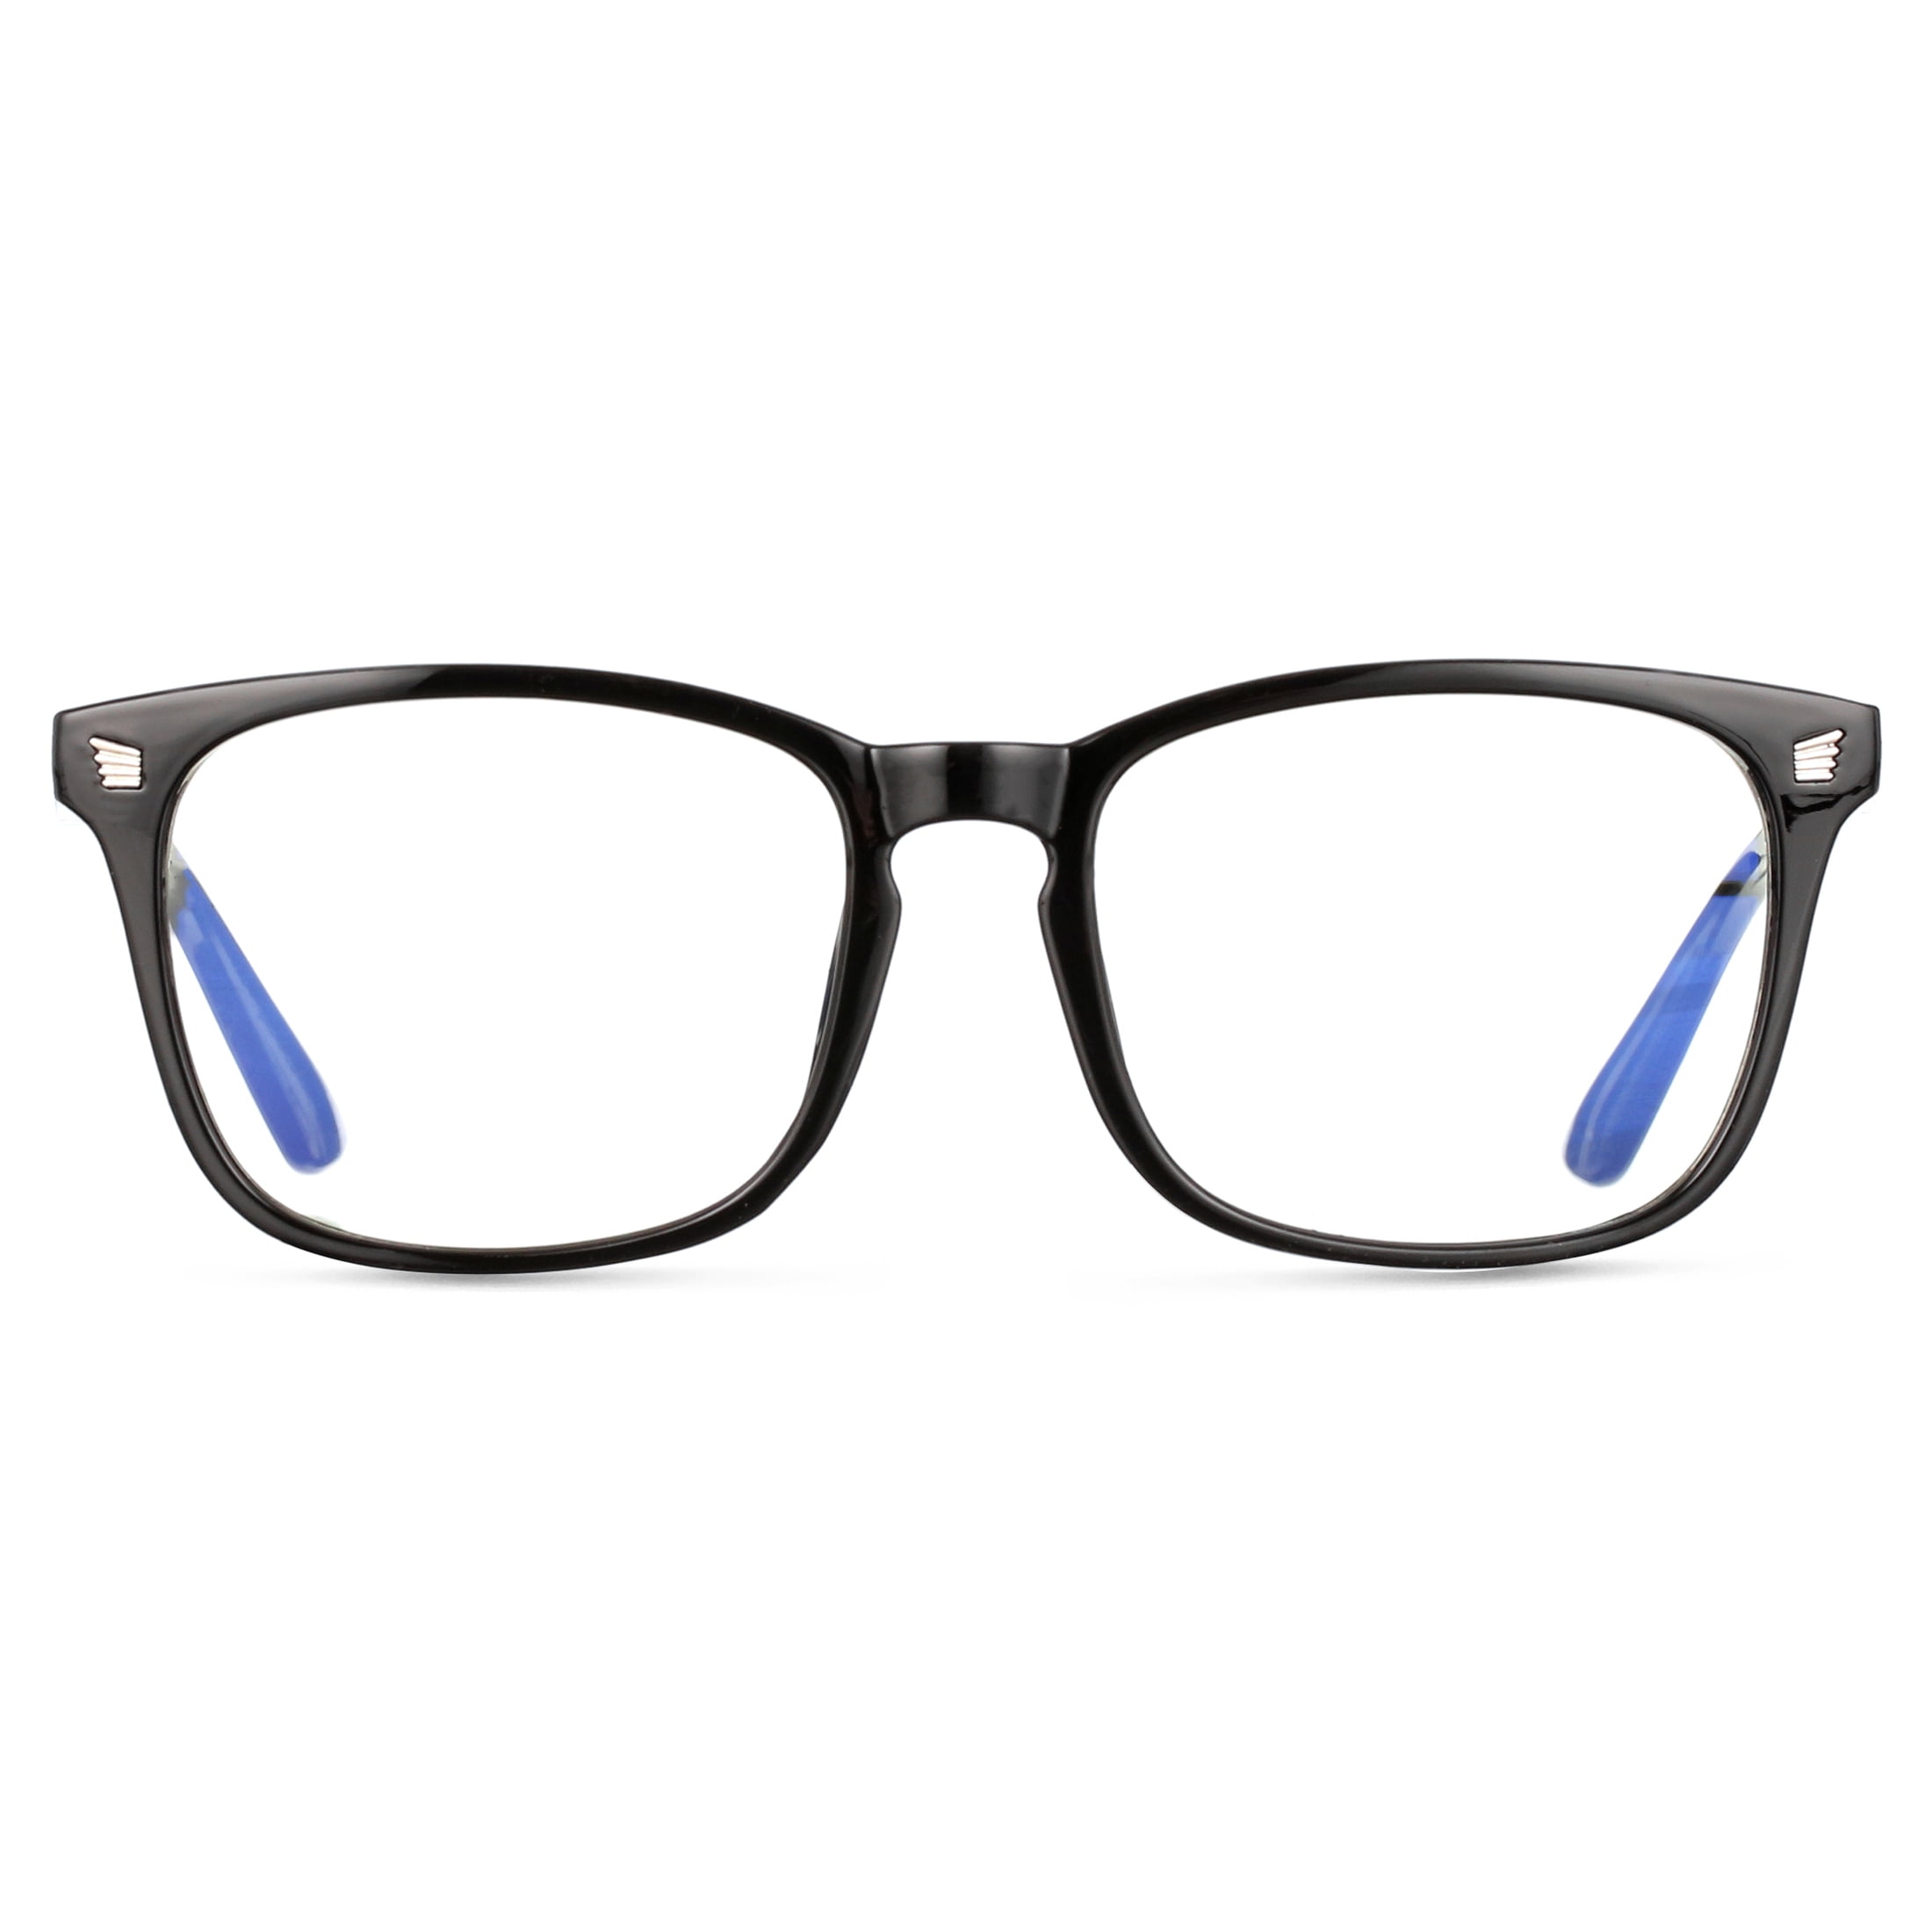 livho 2 Pack Blue Light Blocking Glasses, Computer Reading/Gaming/TV/Phones  Glasses for Women Men,Anti Eyestrain & UV Glare (Light Black+Clear)